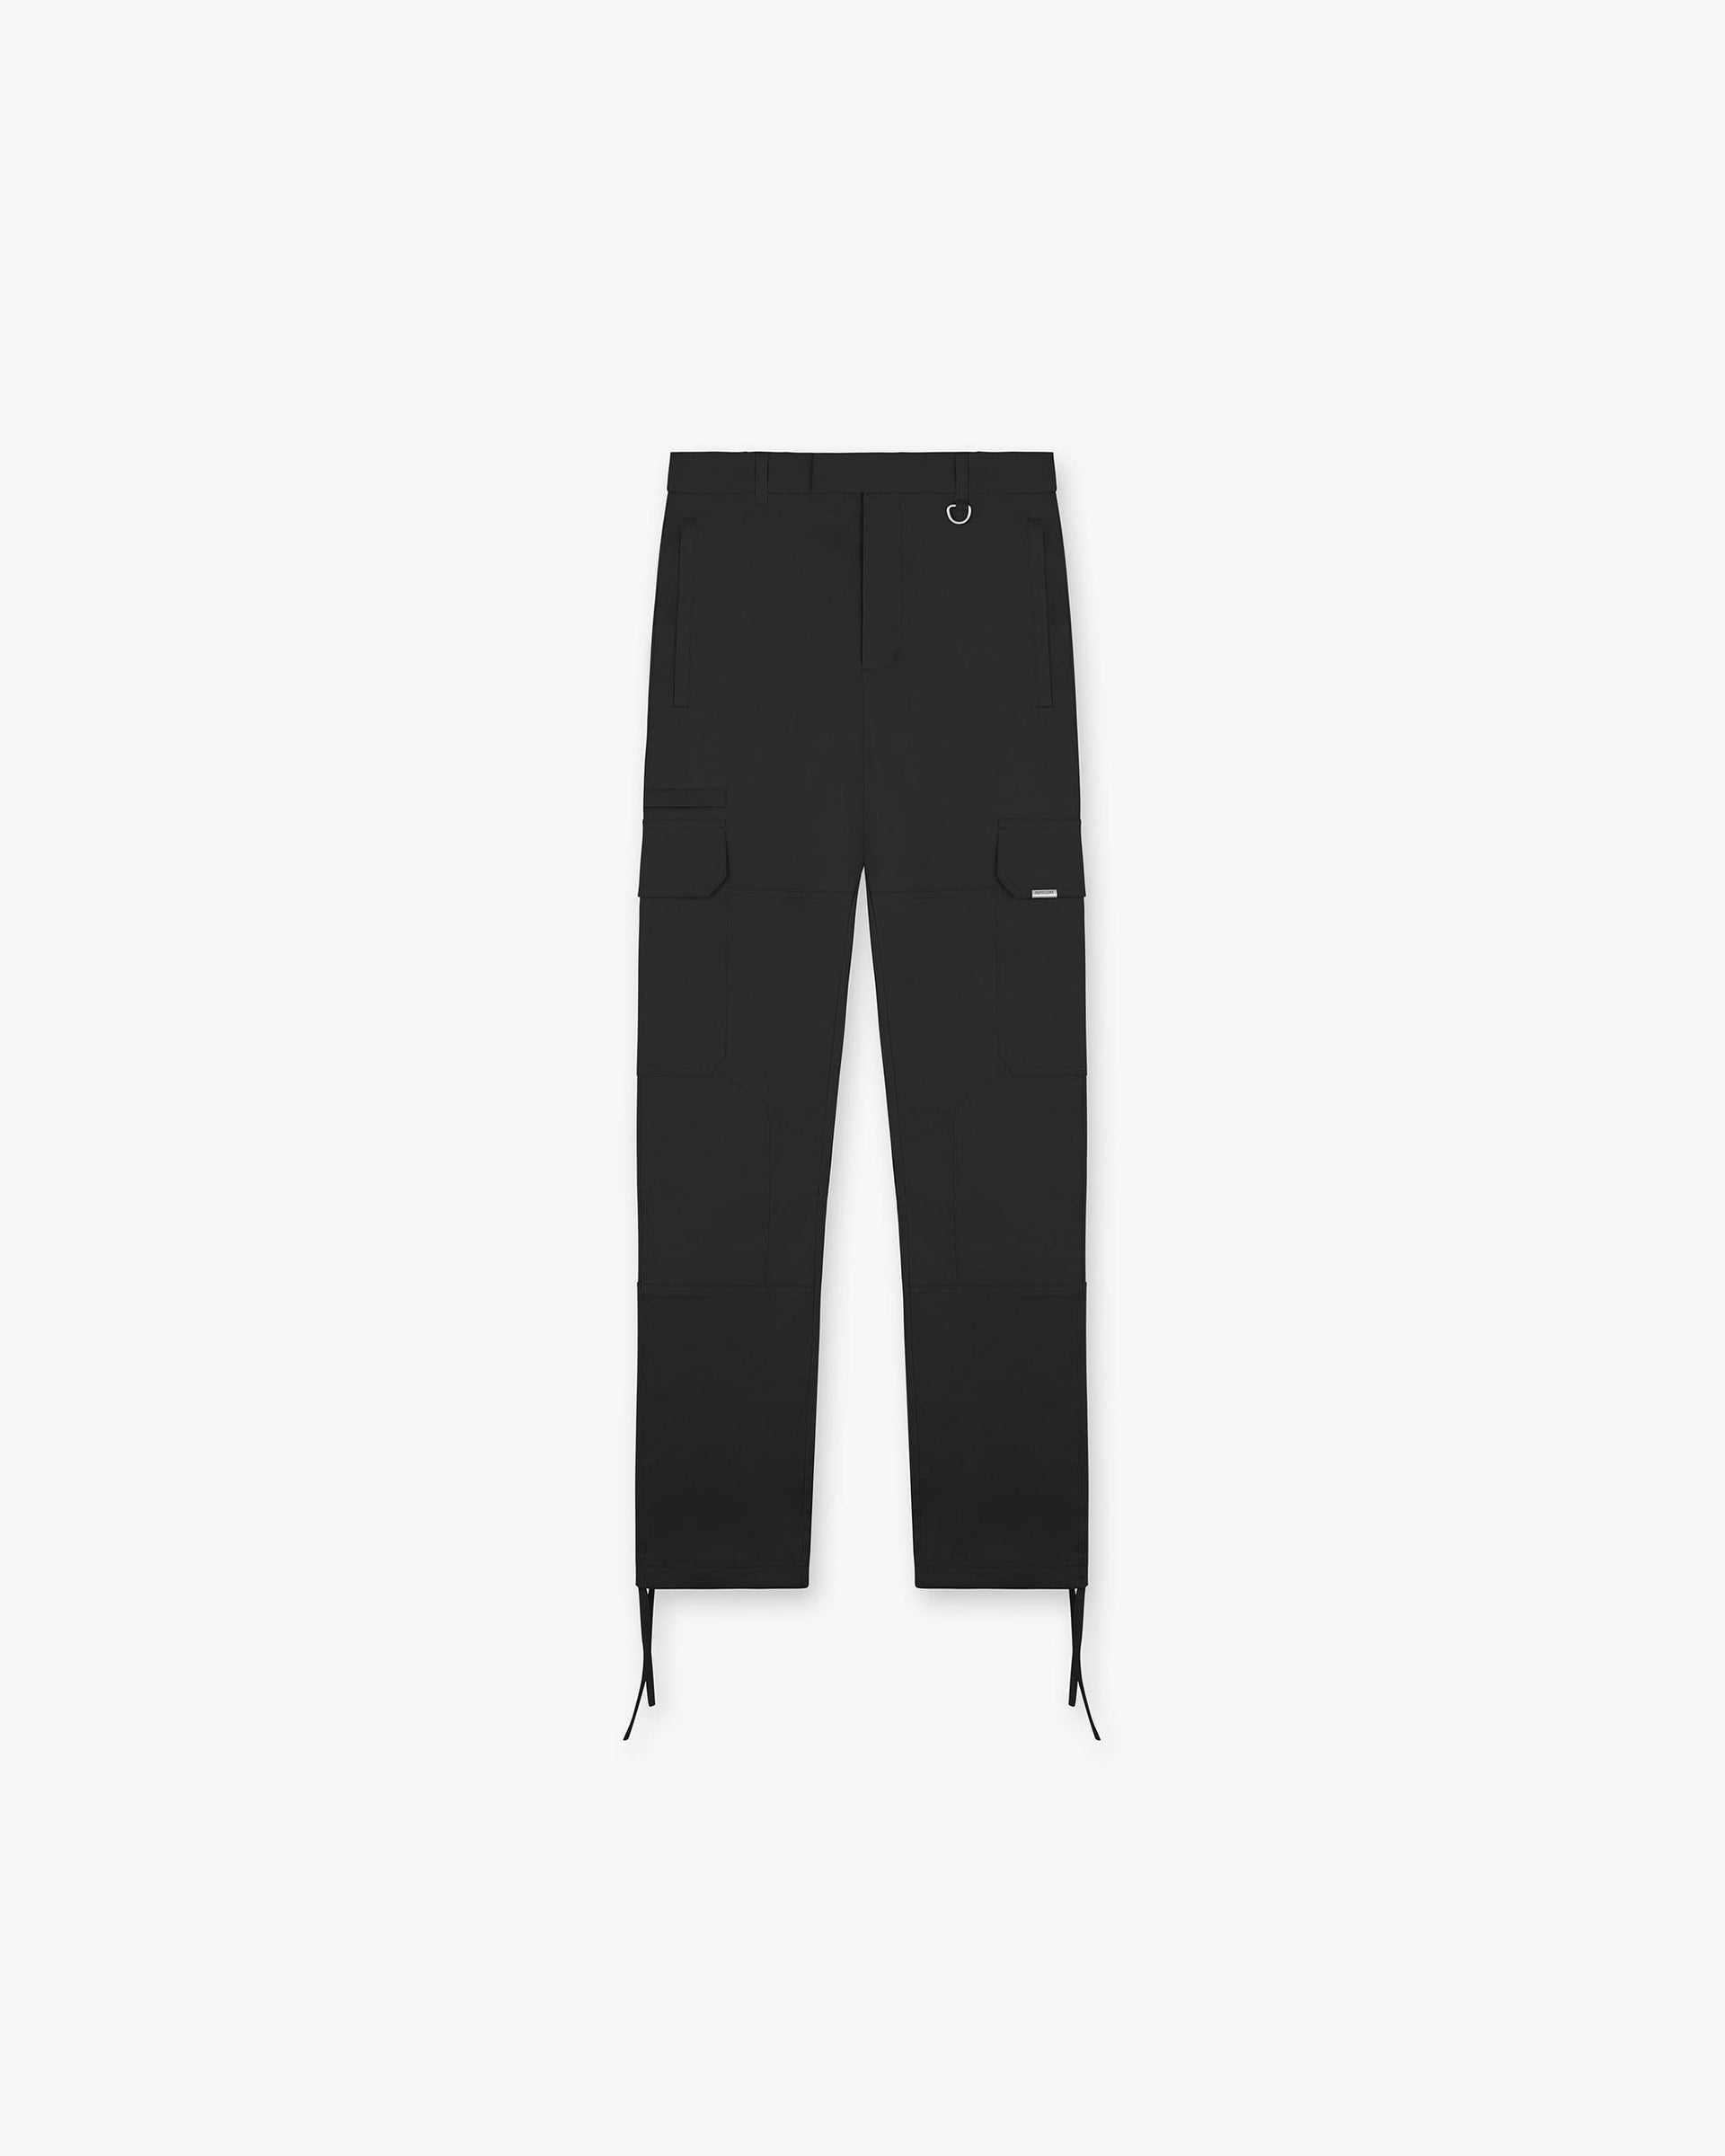 Cargo Pant | Black Pants FW22 | Represent Clo